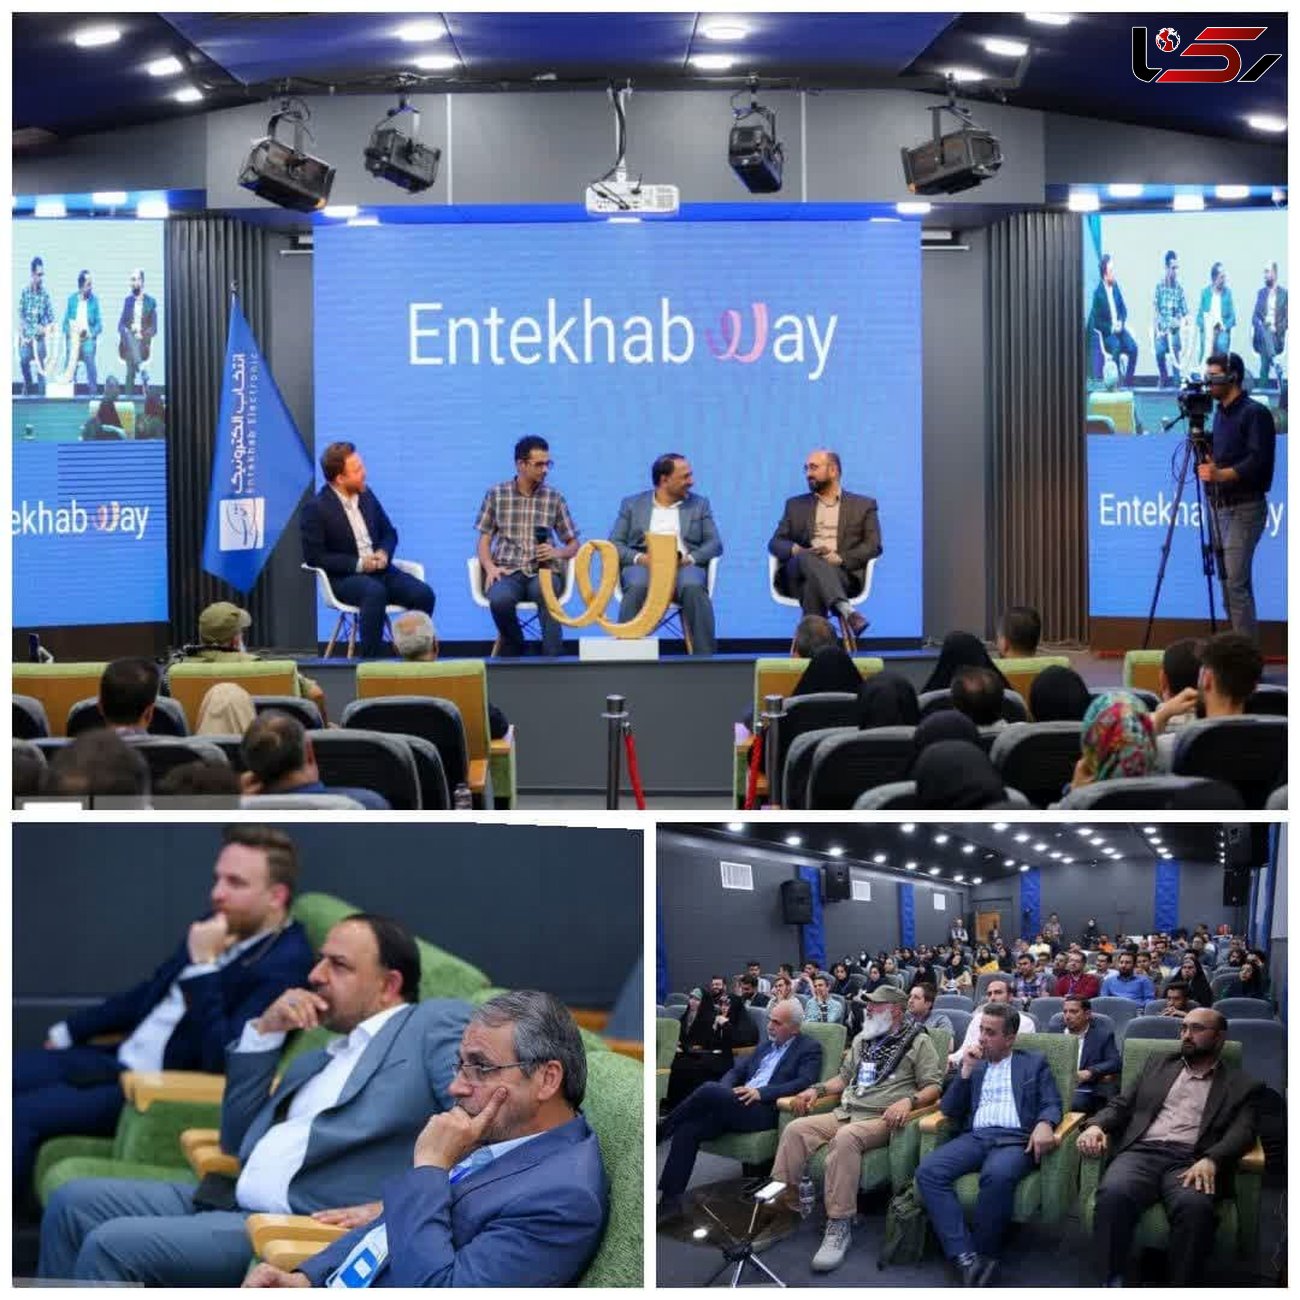 رویداد "entekhab way" در جست و جوی راه مشترک صنعت و دانشگاه